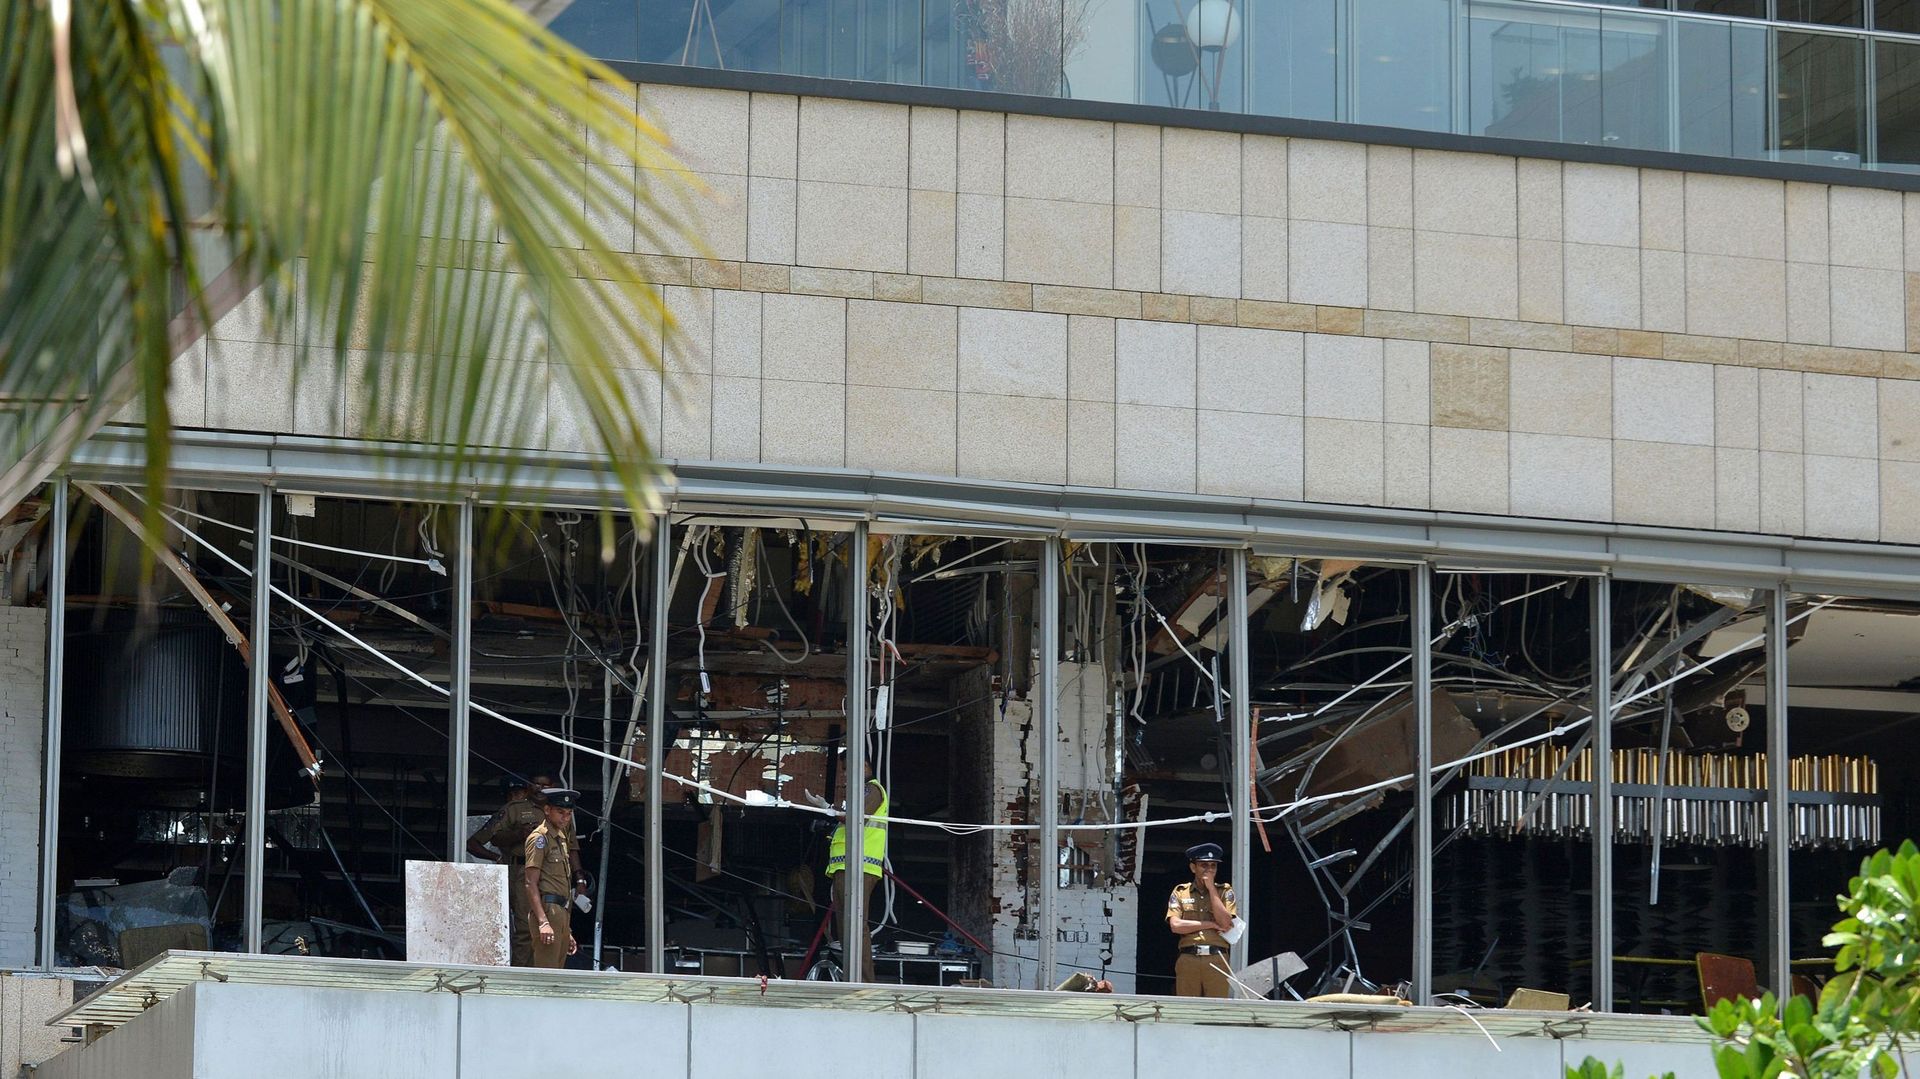 Les vitres d'un restaurant qui ont explosé dimanche